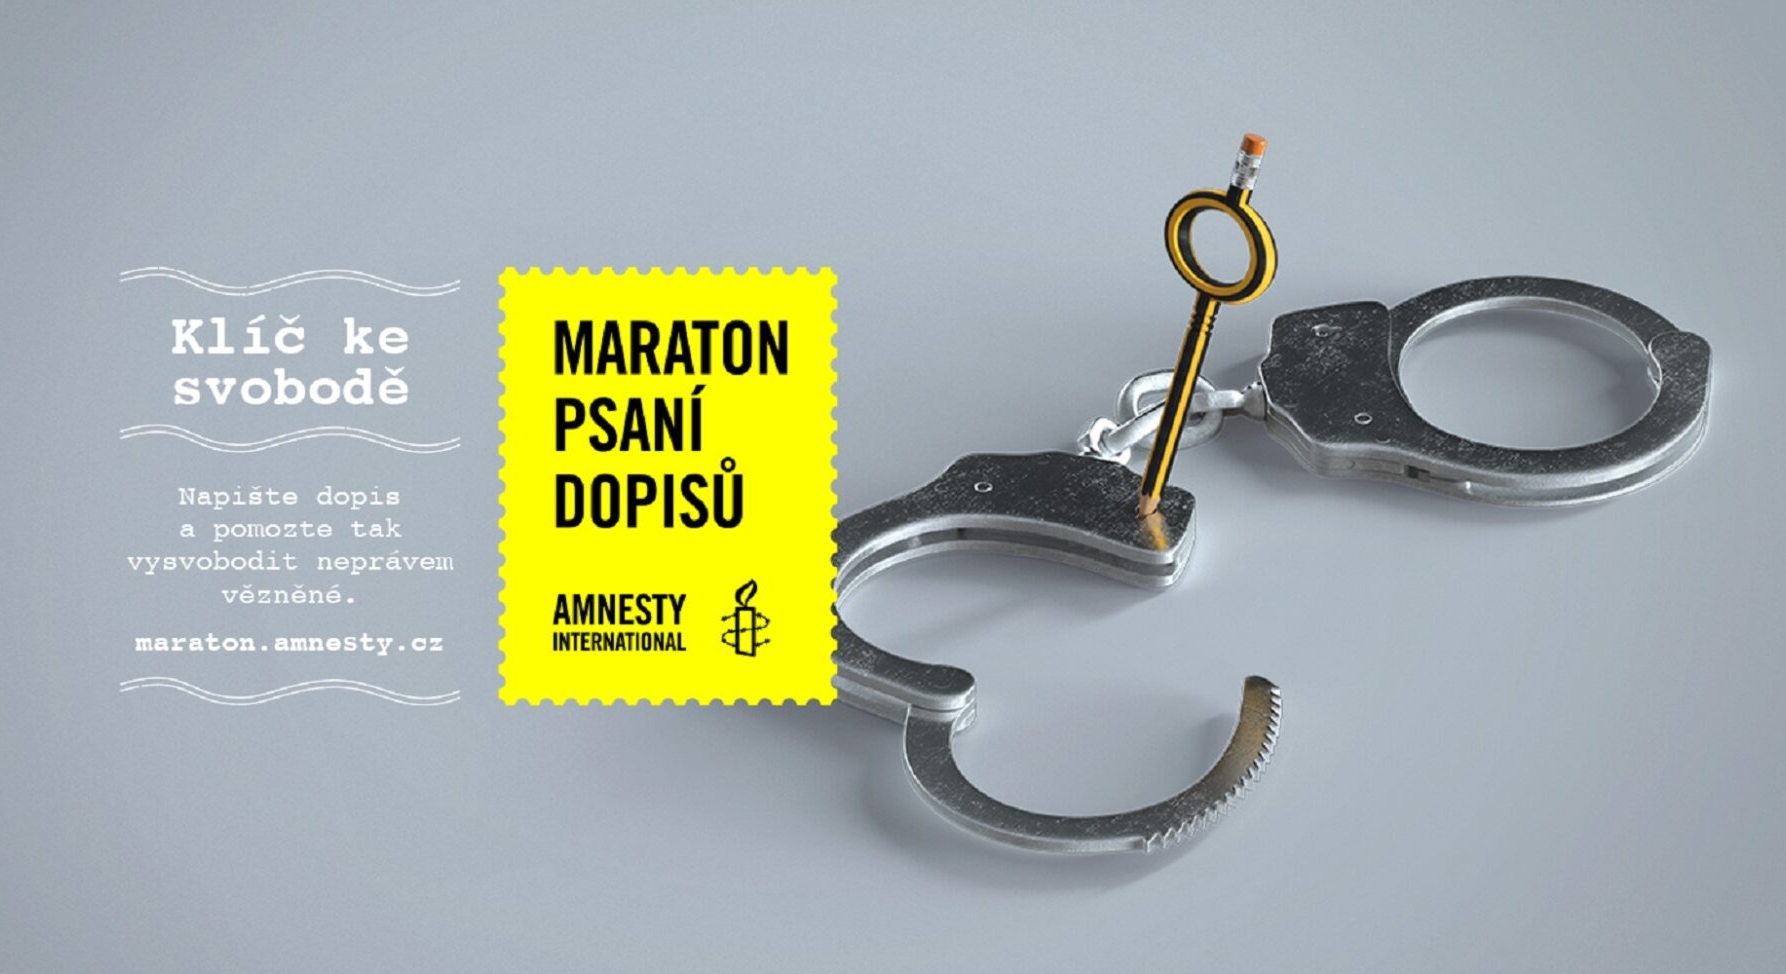 Amnesty International – Maraton psaní dopisů na VŠE /12.-16.12./